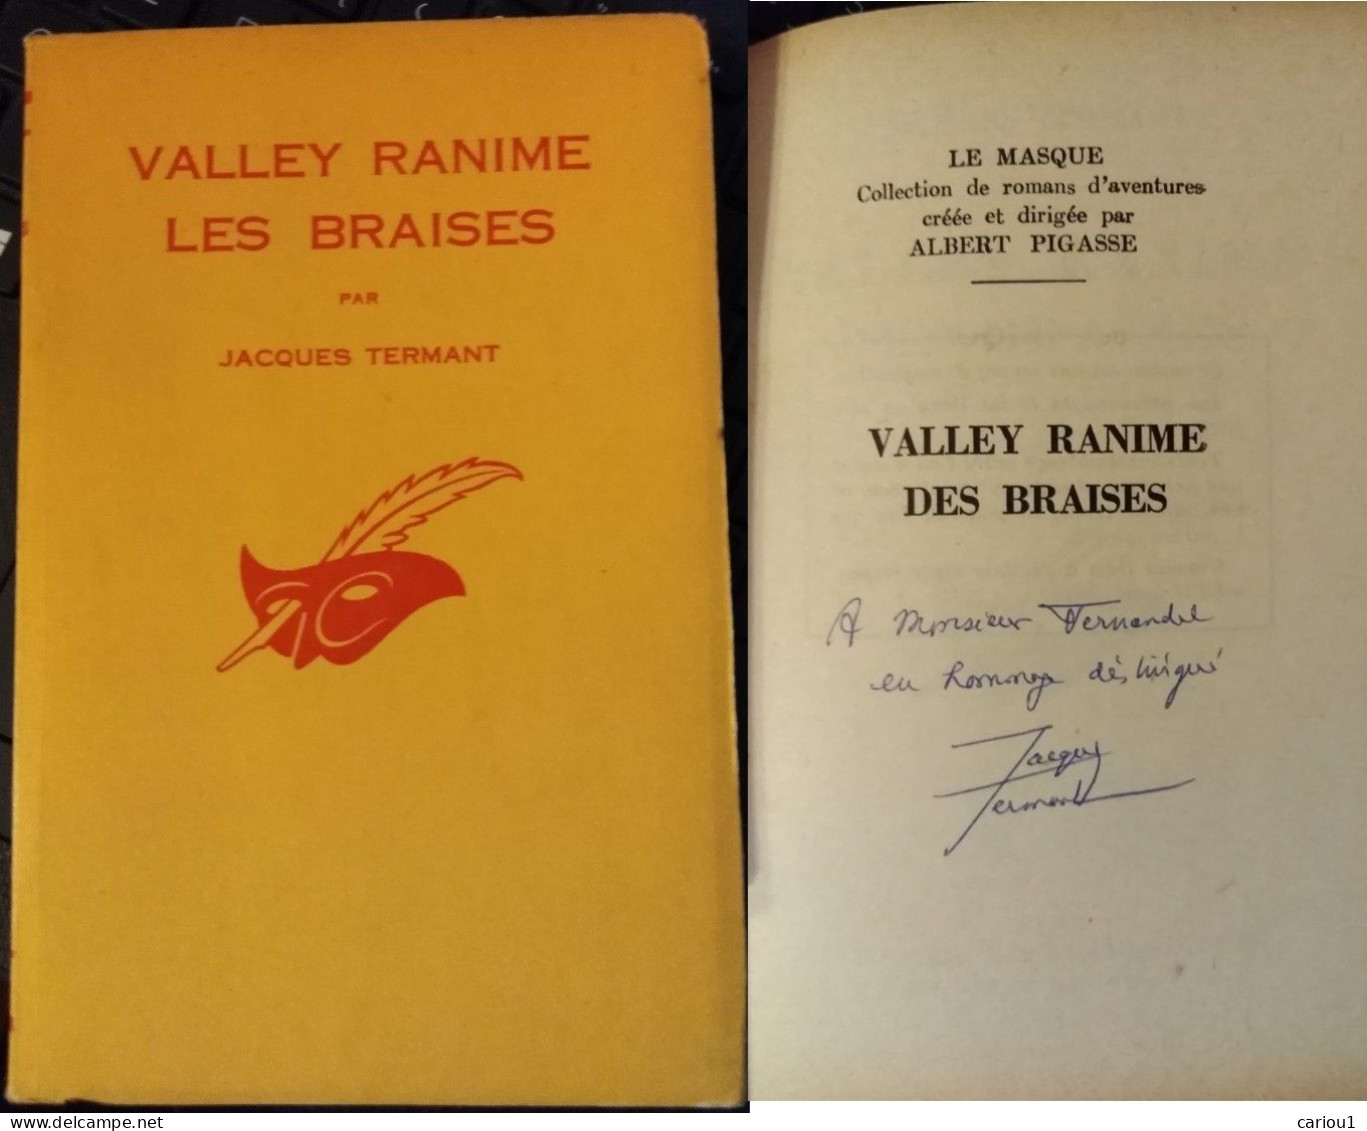 C1 Francois BALSAN Termant VALLEY RANIME LES BRAISES 1962 Envoi DEDICACE SIGNED Port Inclus France - Livres Dédicacés